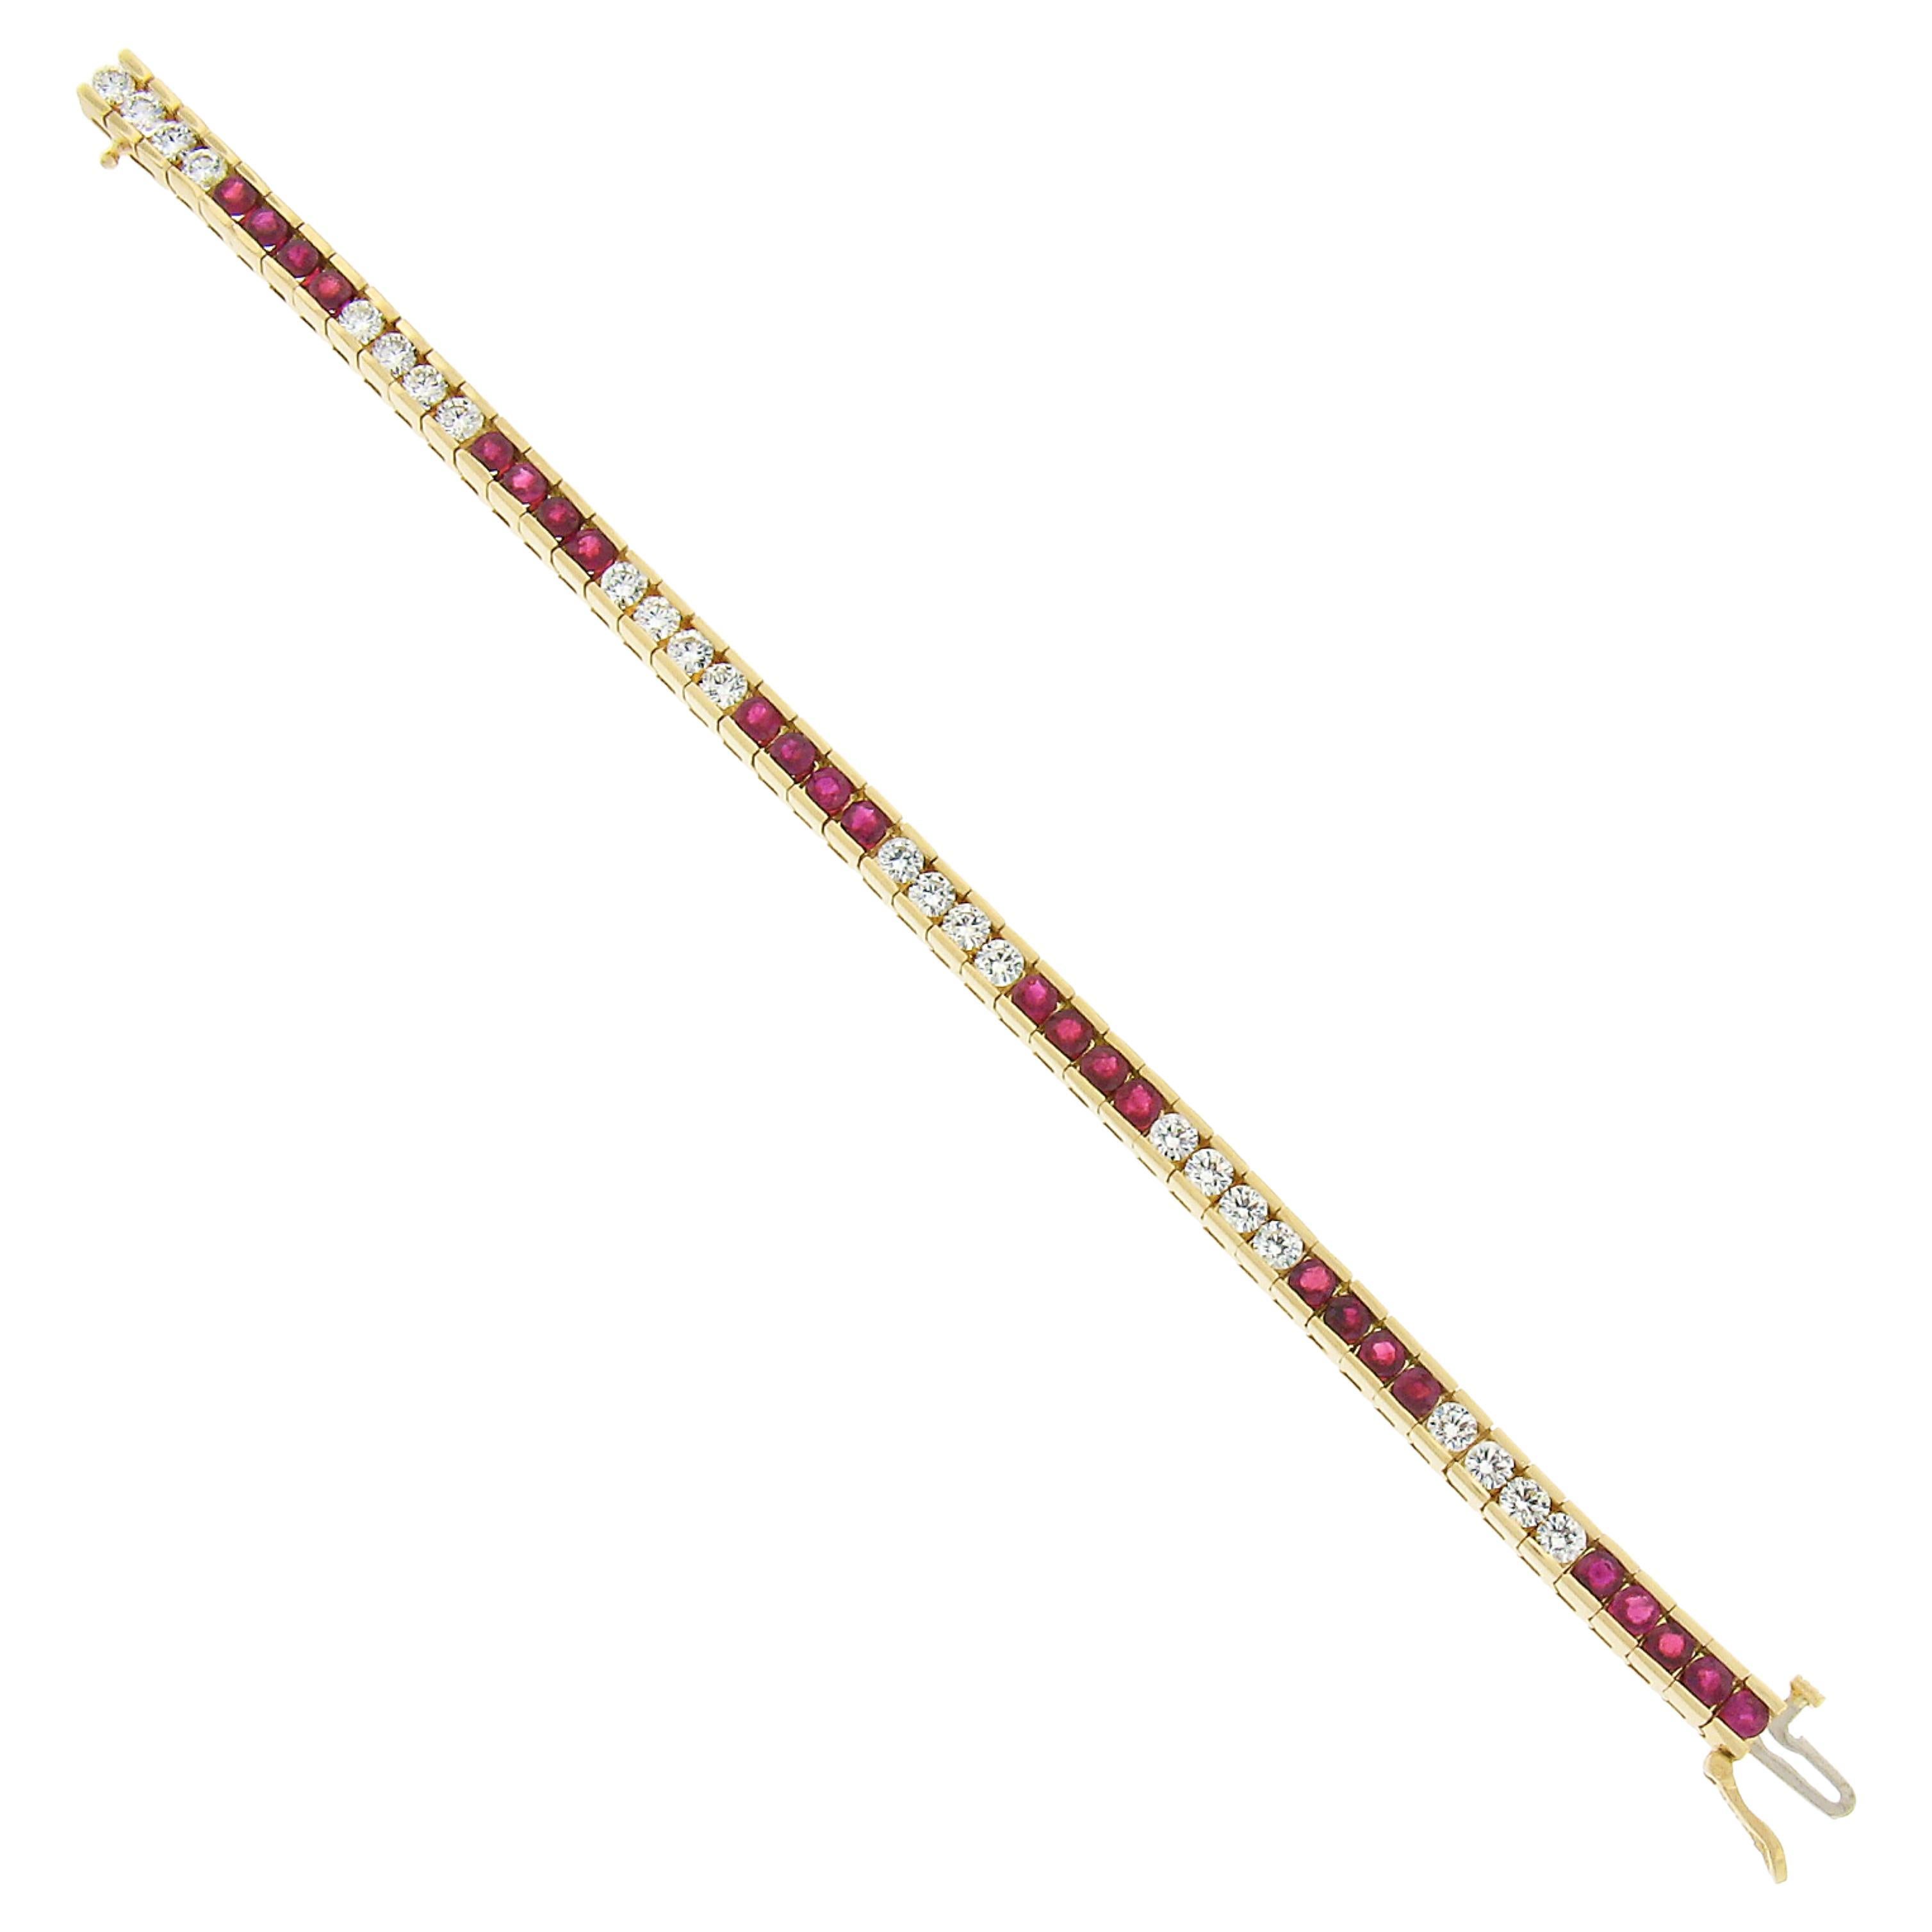 Bracelet tennis en or 18 carats 9,75ctw avec lignes alternées de rubis et de diamants - Estate